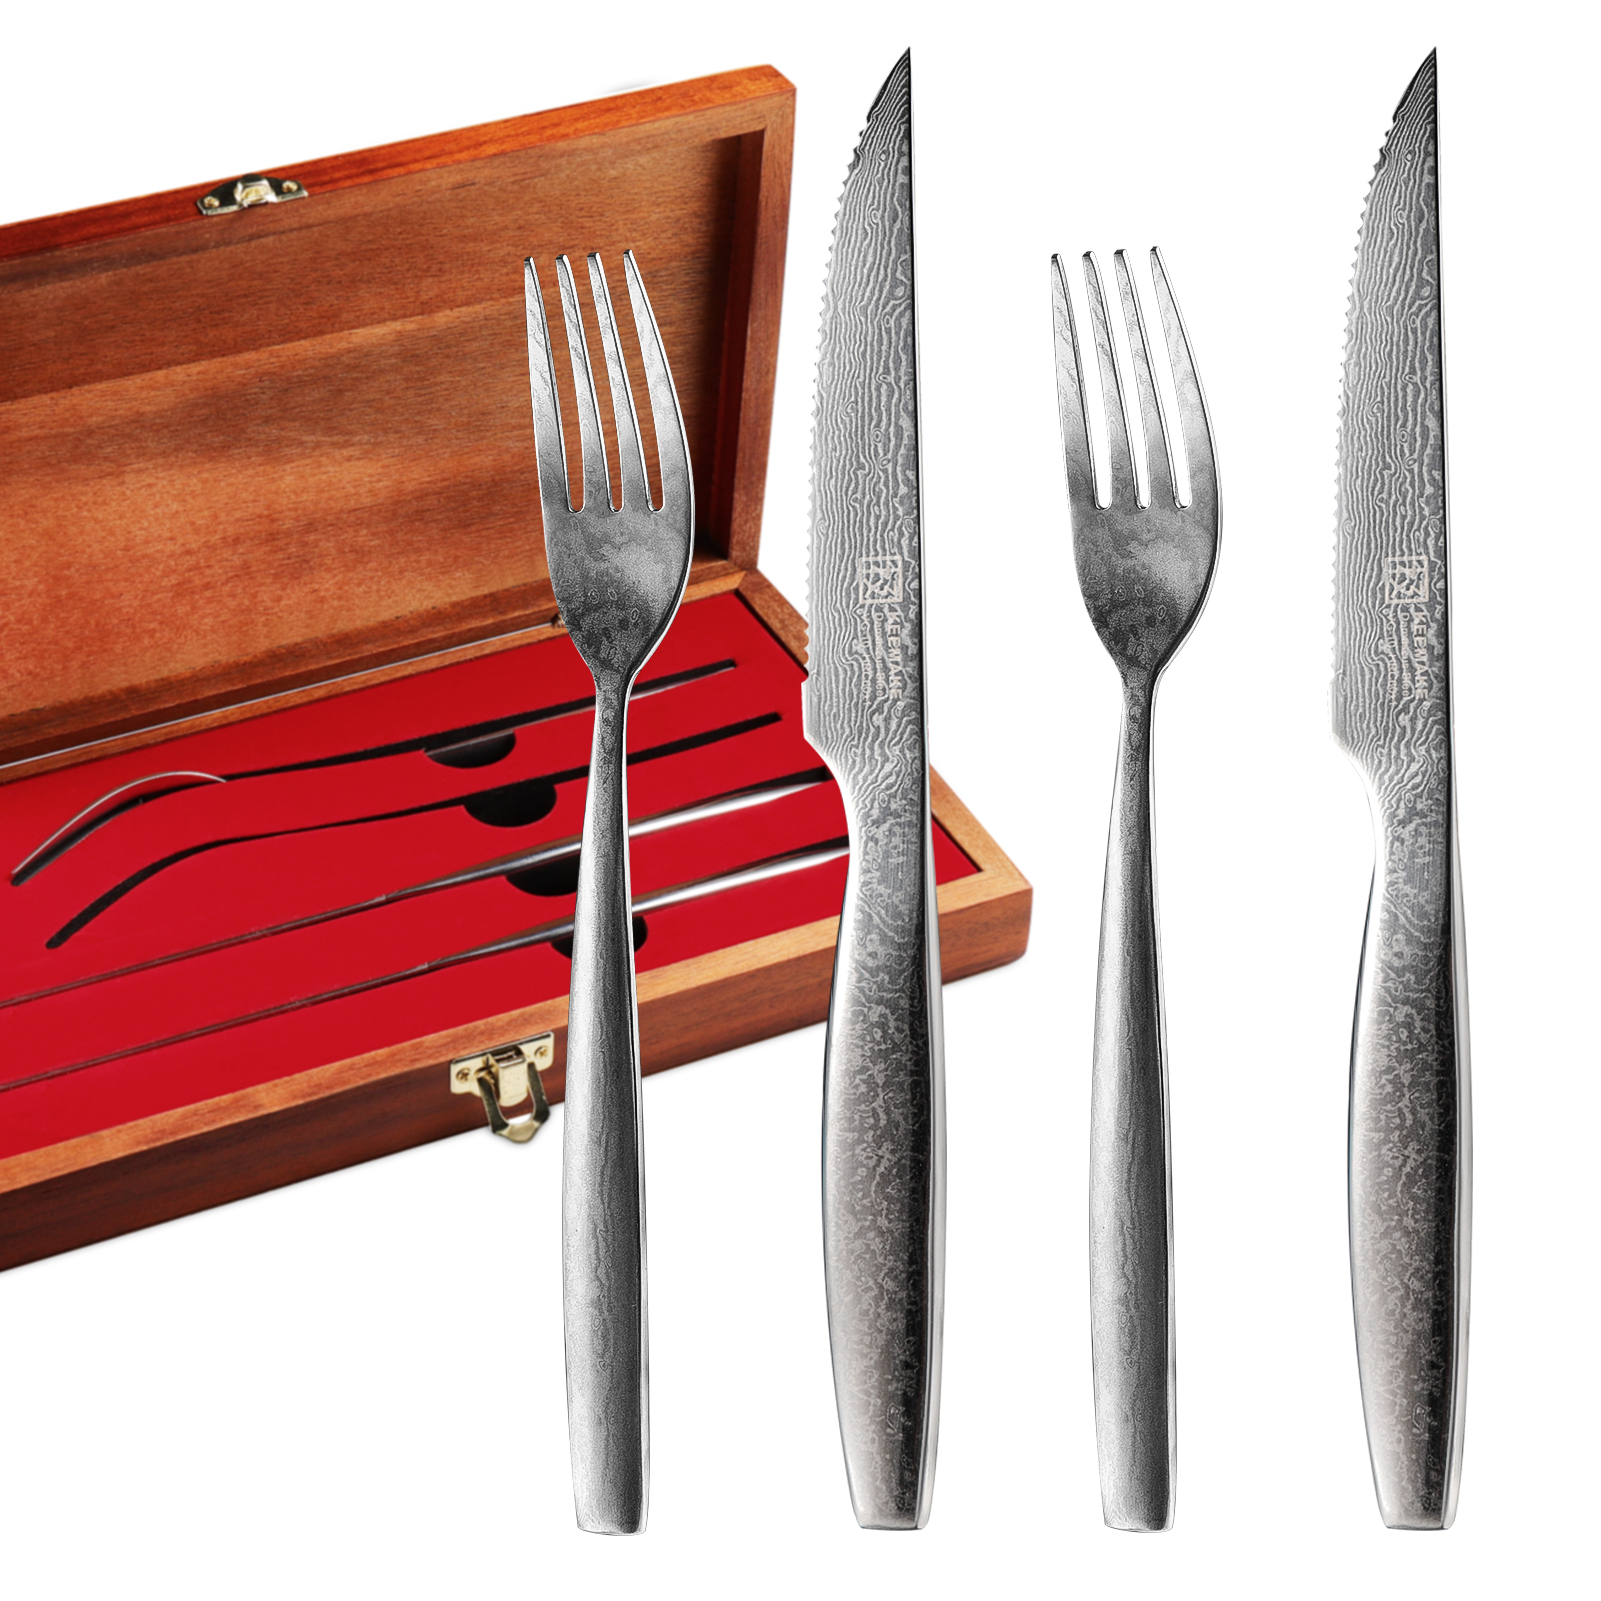 KEEMAKE Unique Design Damascus 2pcs Steak Knives & 2pcs Forks Set With Wooden Box